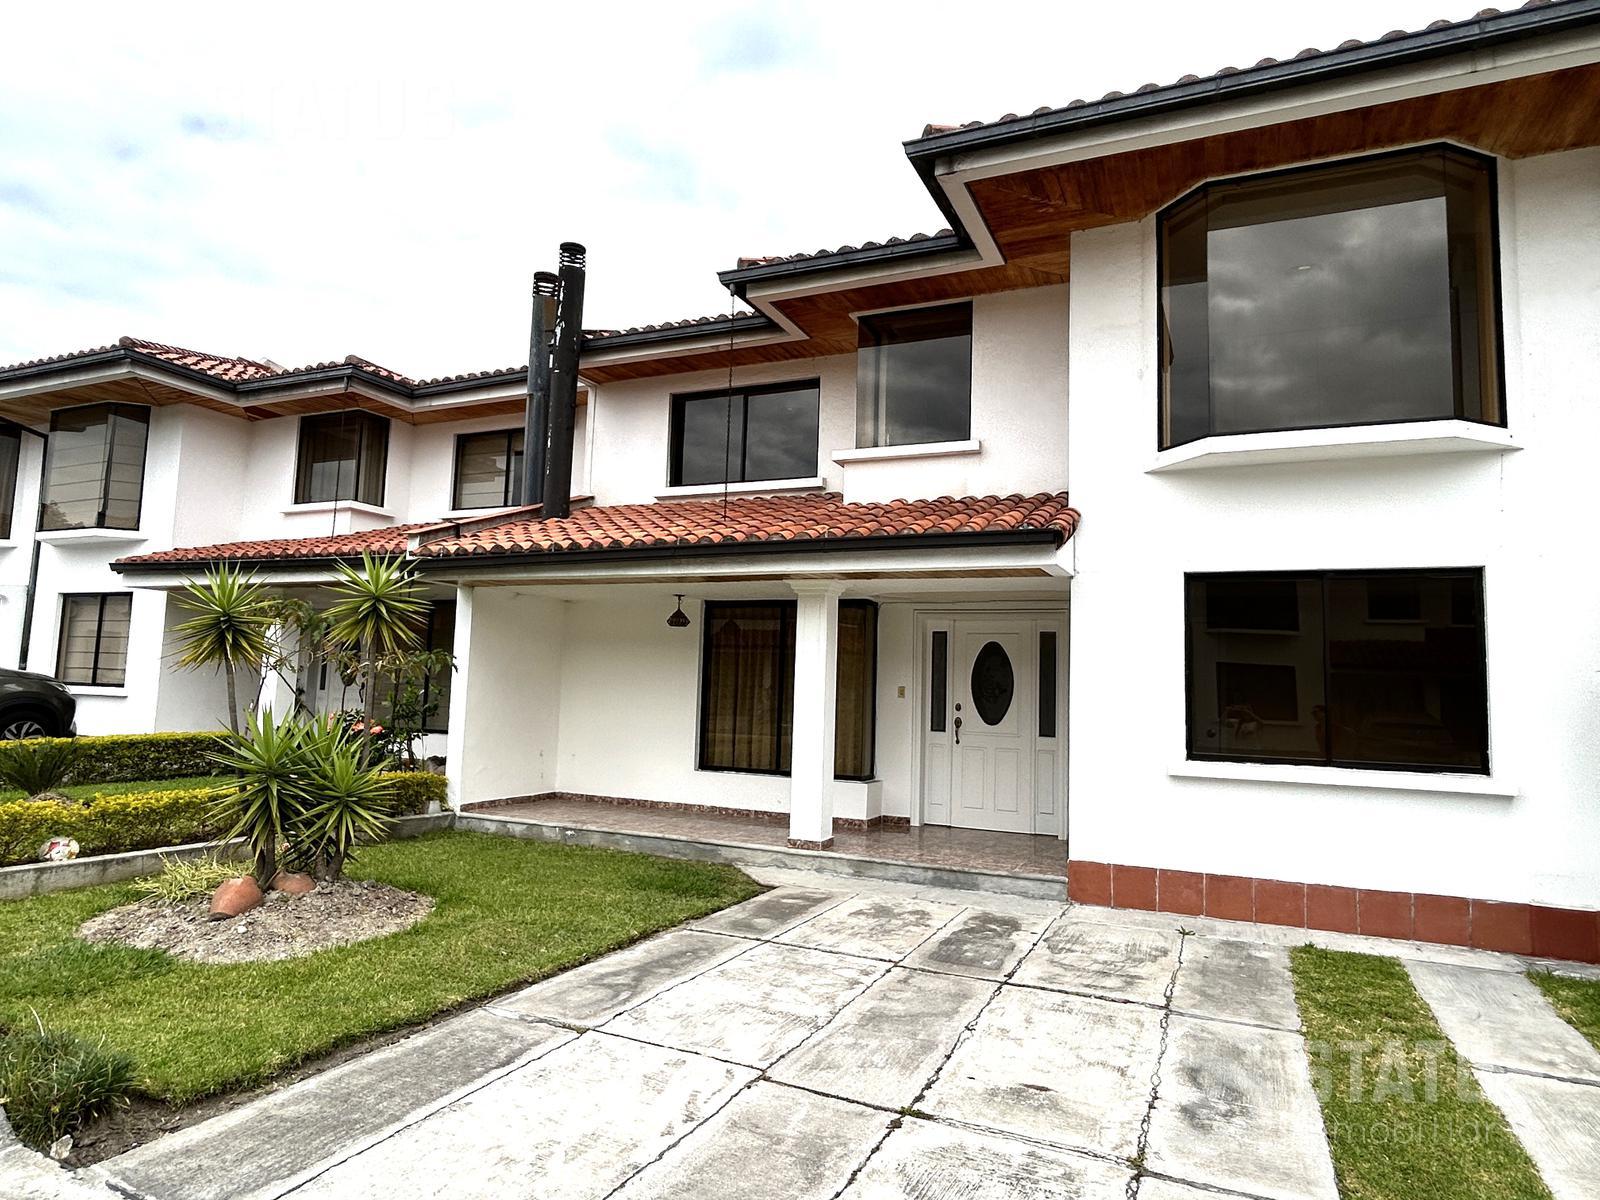 Casa de venta en conjunto 3 Dorm., 2 garajes, sector Mirasierra, $91.900